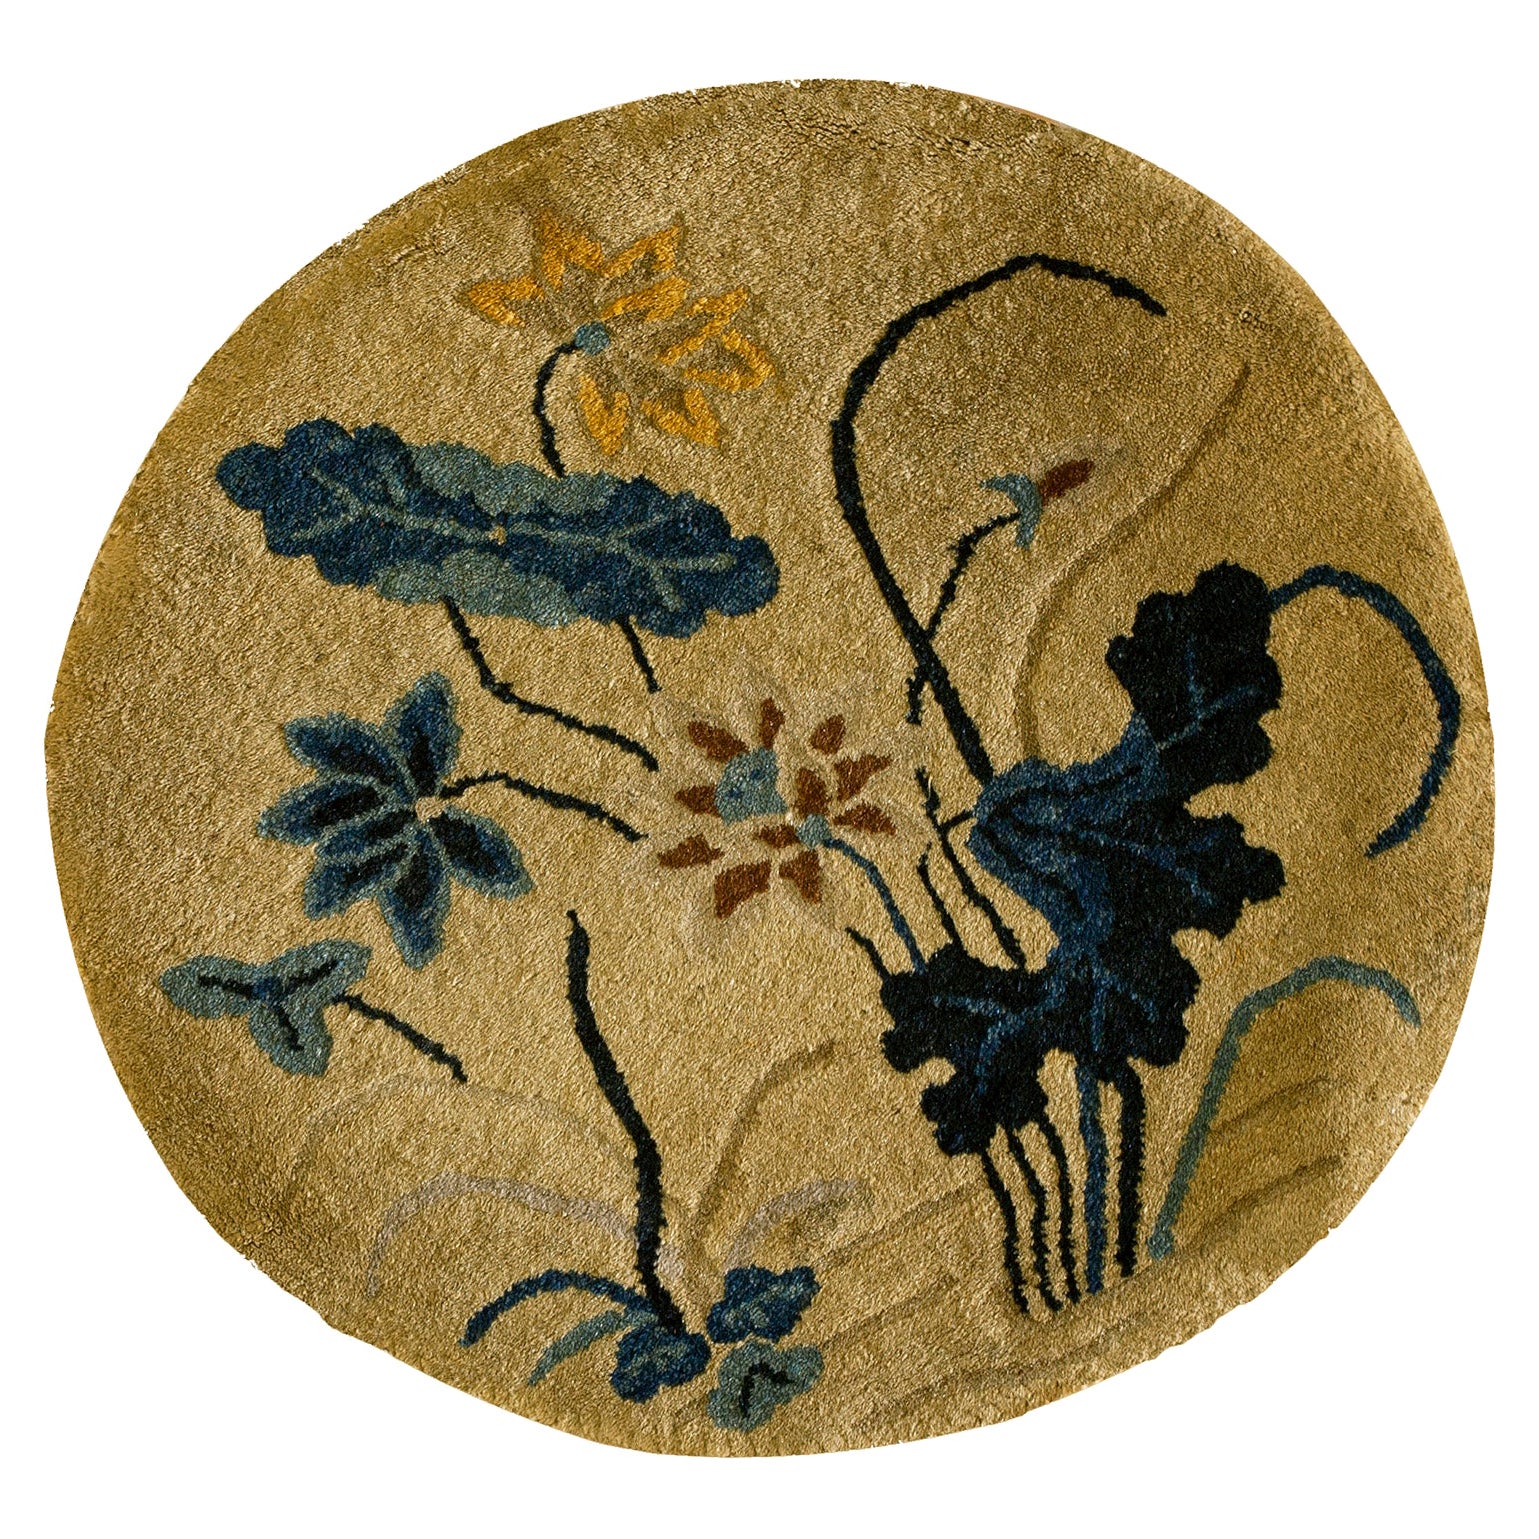 Runder chinesischer Art-déco-Teppich aus den 1920er Jahren ( 2' R - 62 cm)